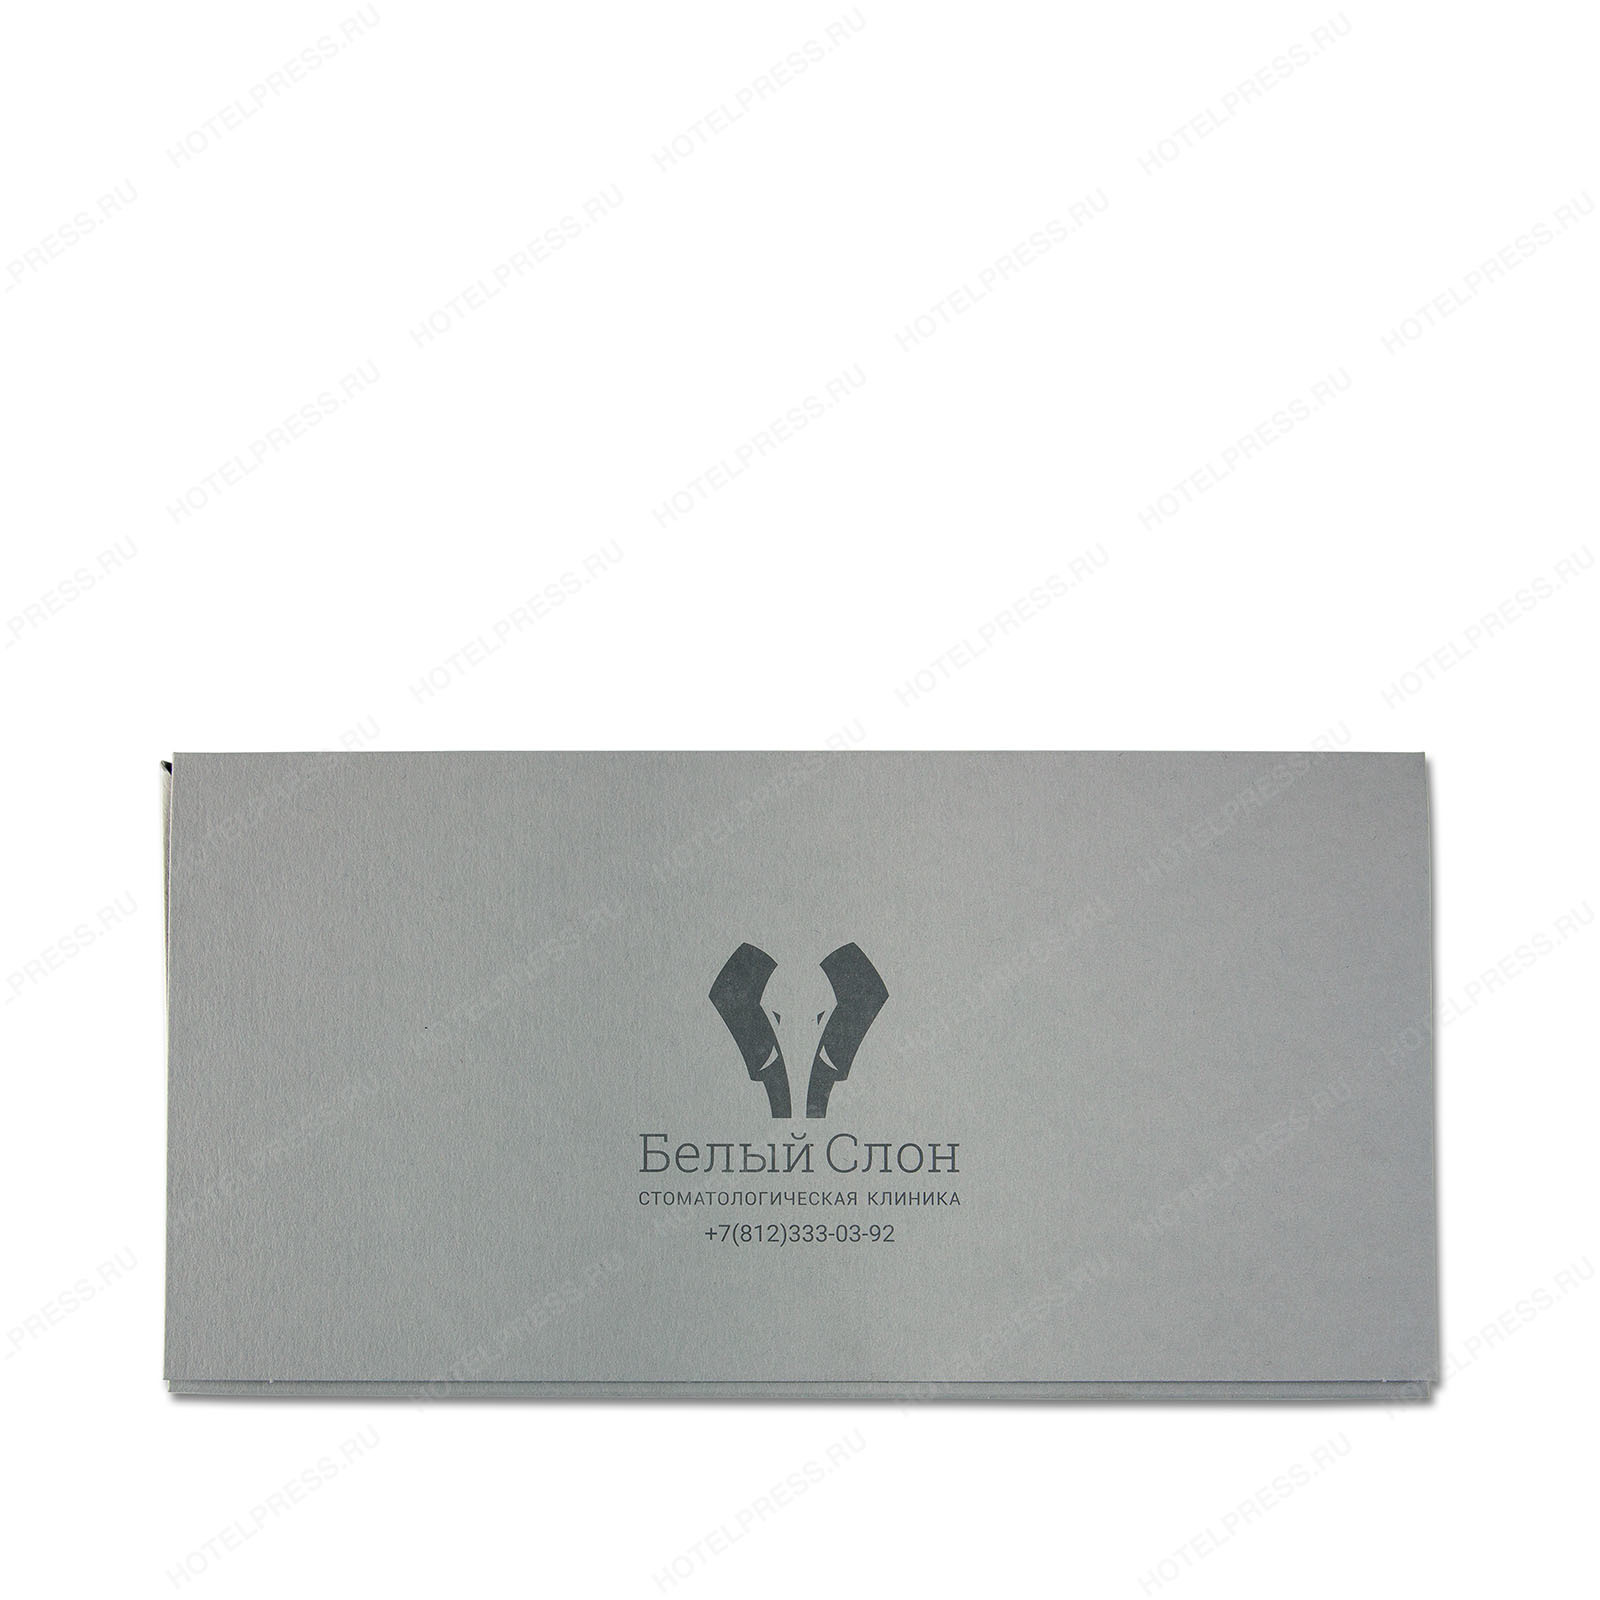 Объемный конверт для вложения из дизайнерской бумаги для стоматологии